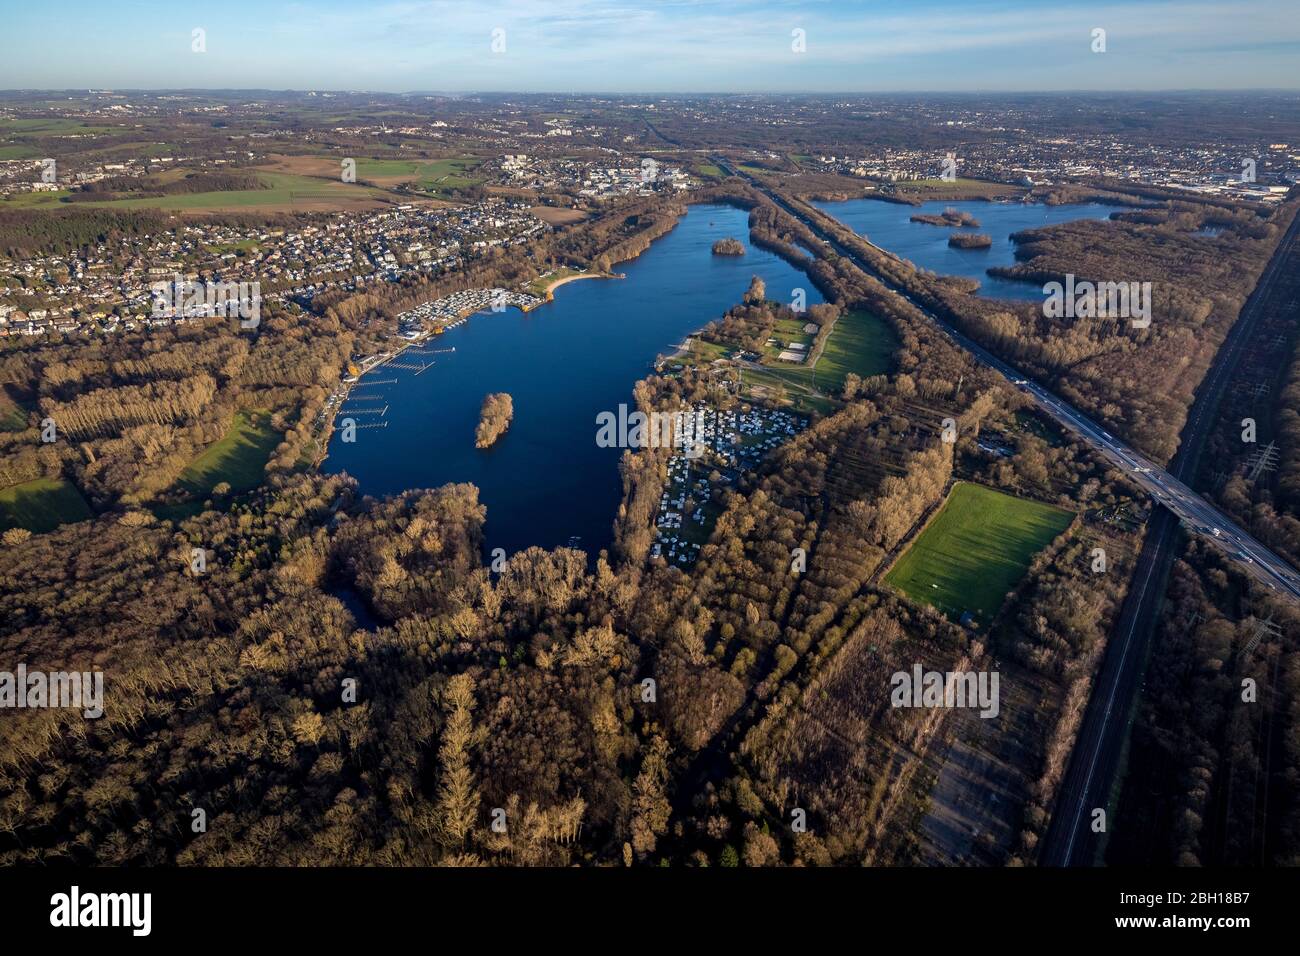 Lake Unterbach, Lake Elbsee and motorway A 46, 19.12.2020, aerial view, Germany, North Rhine-Westphalia, Lower Rhine, Dusseldorf Stock Photo